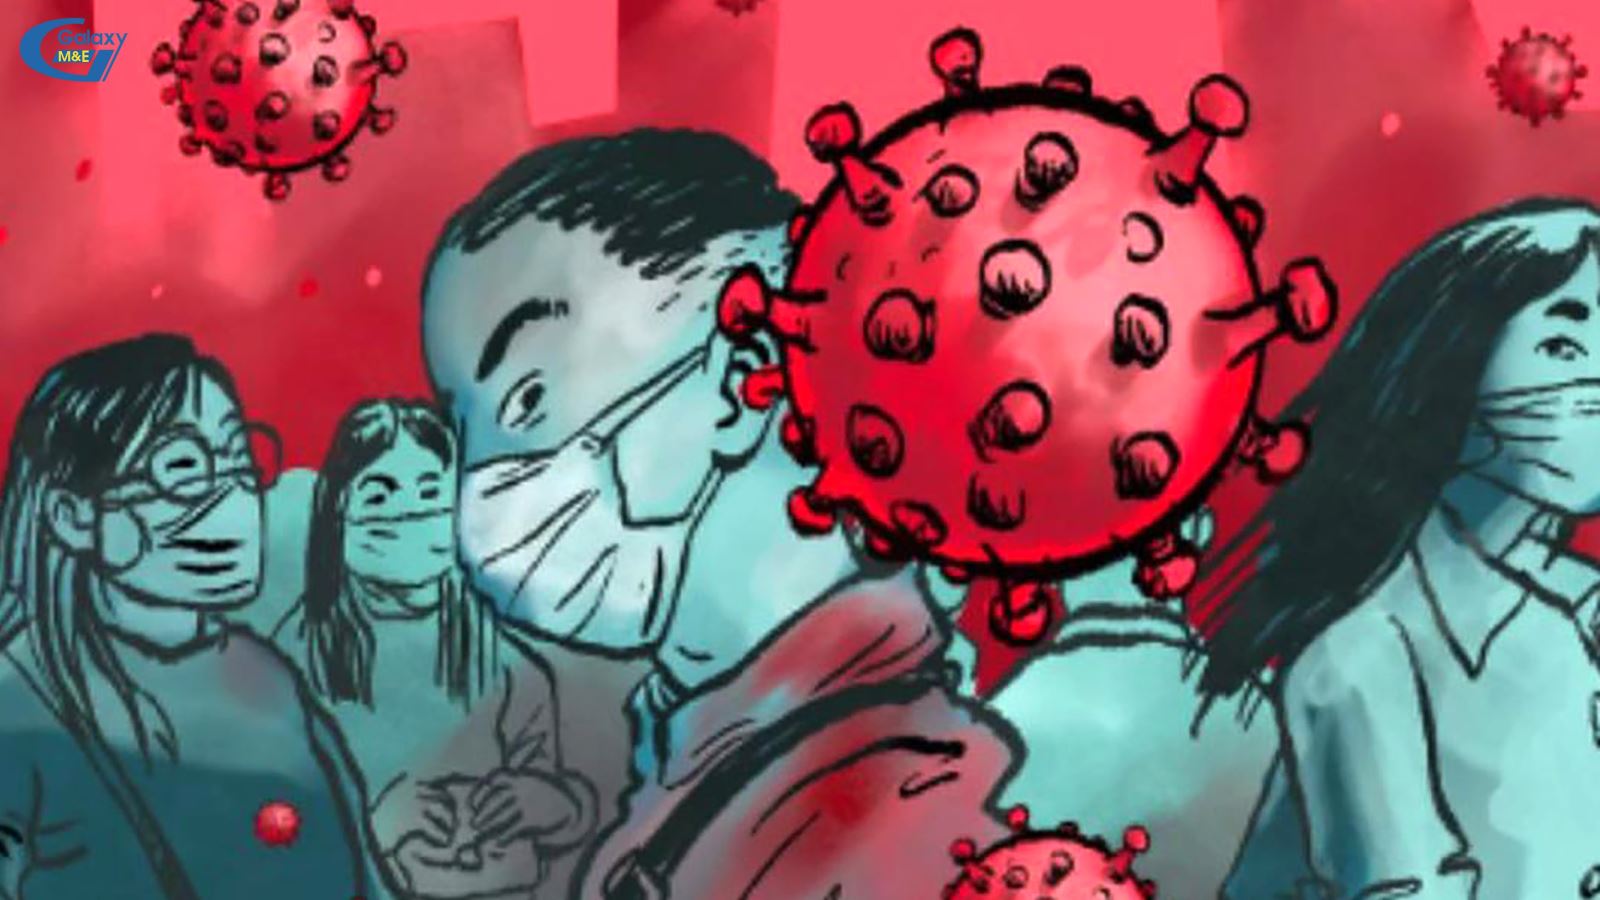 Sự chủ quan của chính quyền Wuahan đã khiến virus lan rộng, gây thiệt hại to lớn cho nền kinh tế Trung QUốc và thế giới.